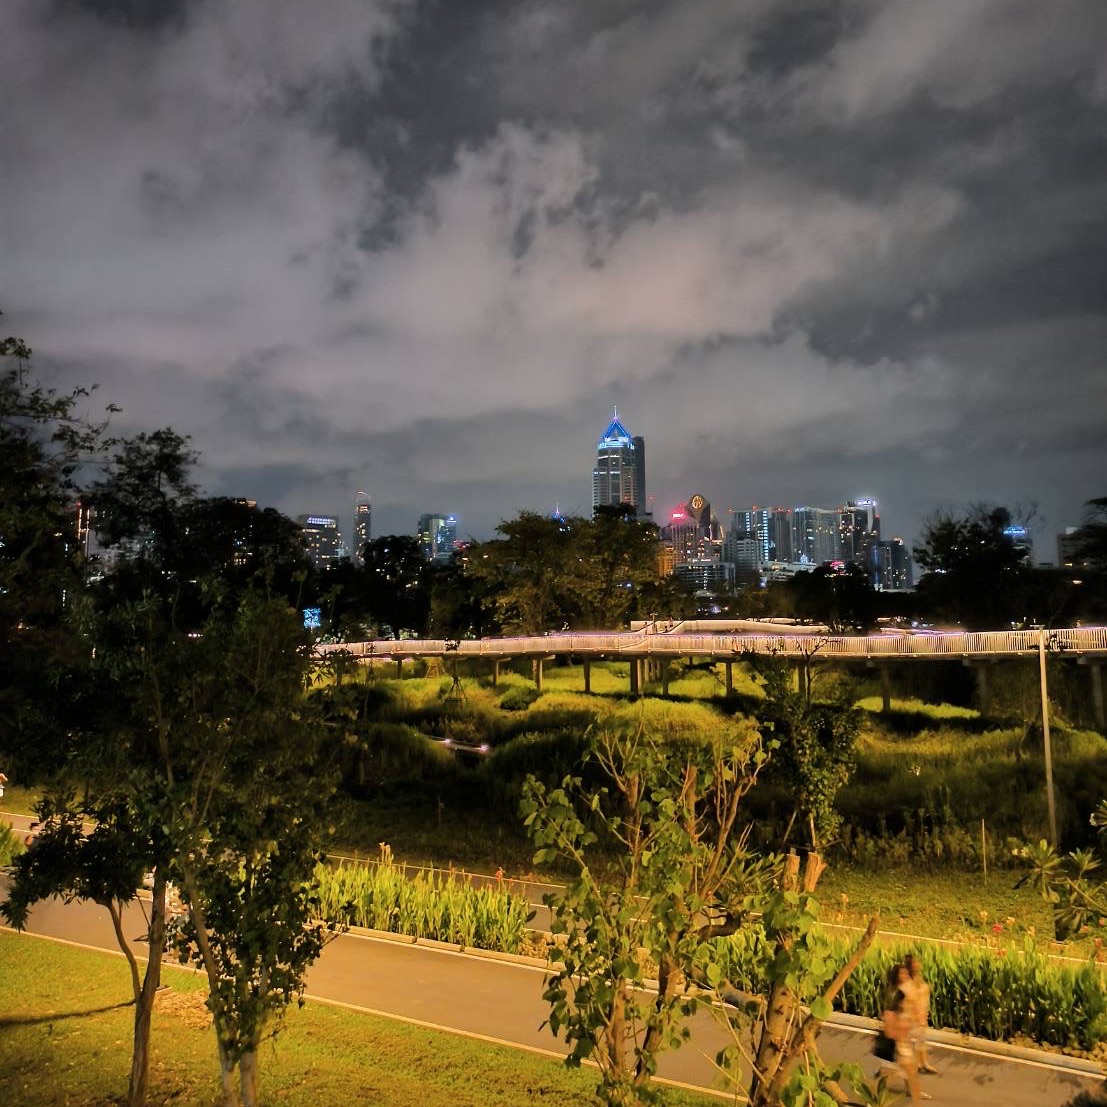 มาลองสวนเบญจกิติตอนกลางคืนกัน!! | Trip.com กรุงเทพฯ